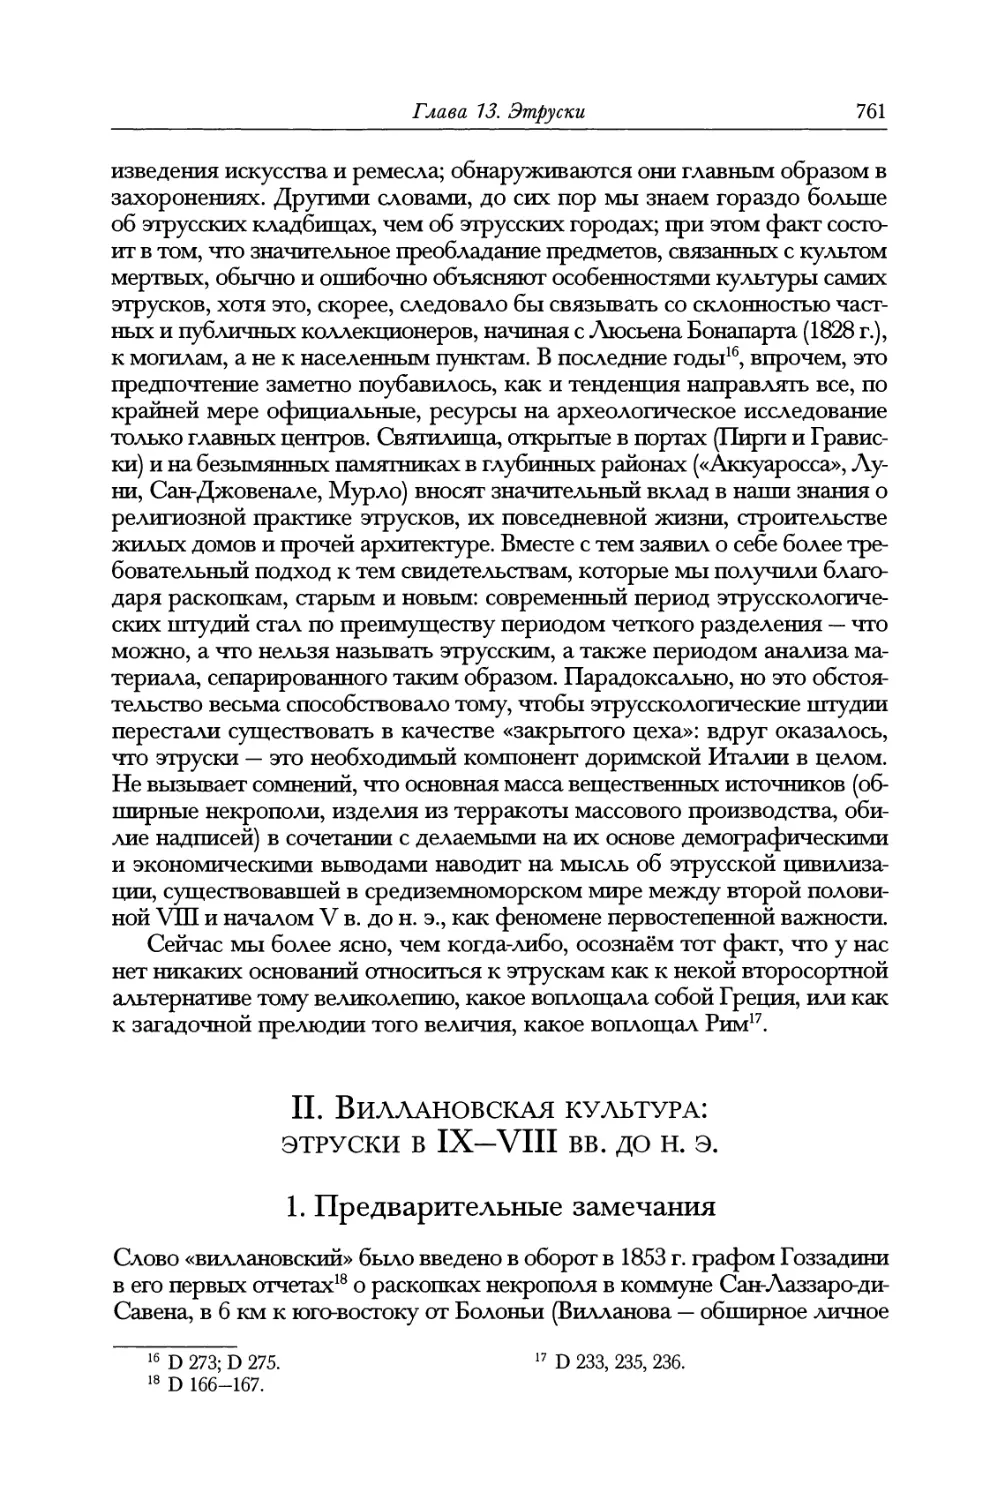 II. Виллановская культура: этруски в IX—VIII вв. до н. э.